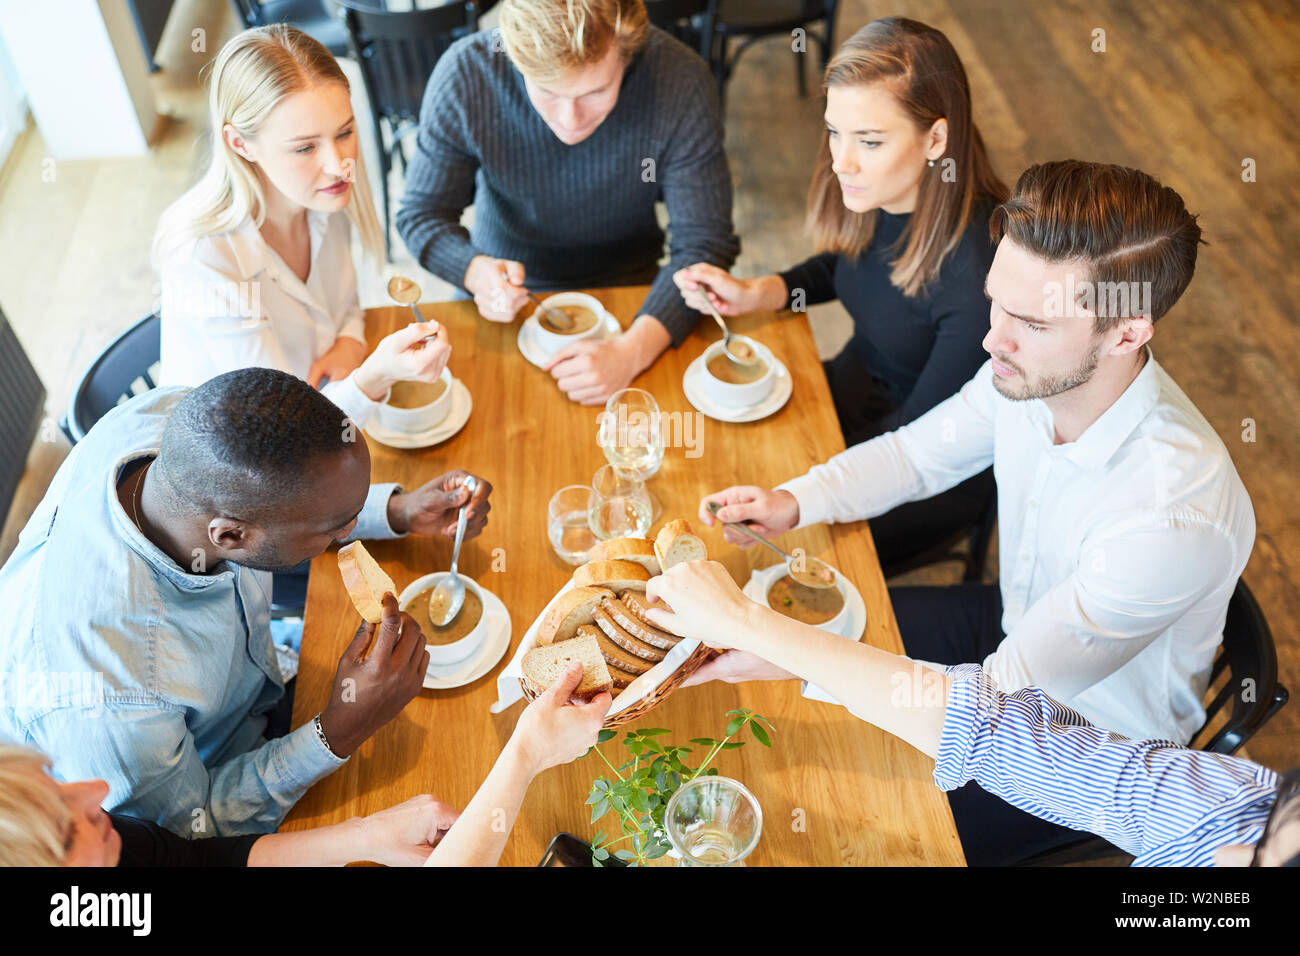 Gruppe von jungen Menschen essen Suppe als Vorspeise im Restaurant Stockfoto